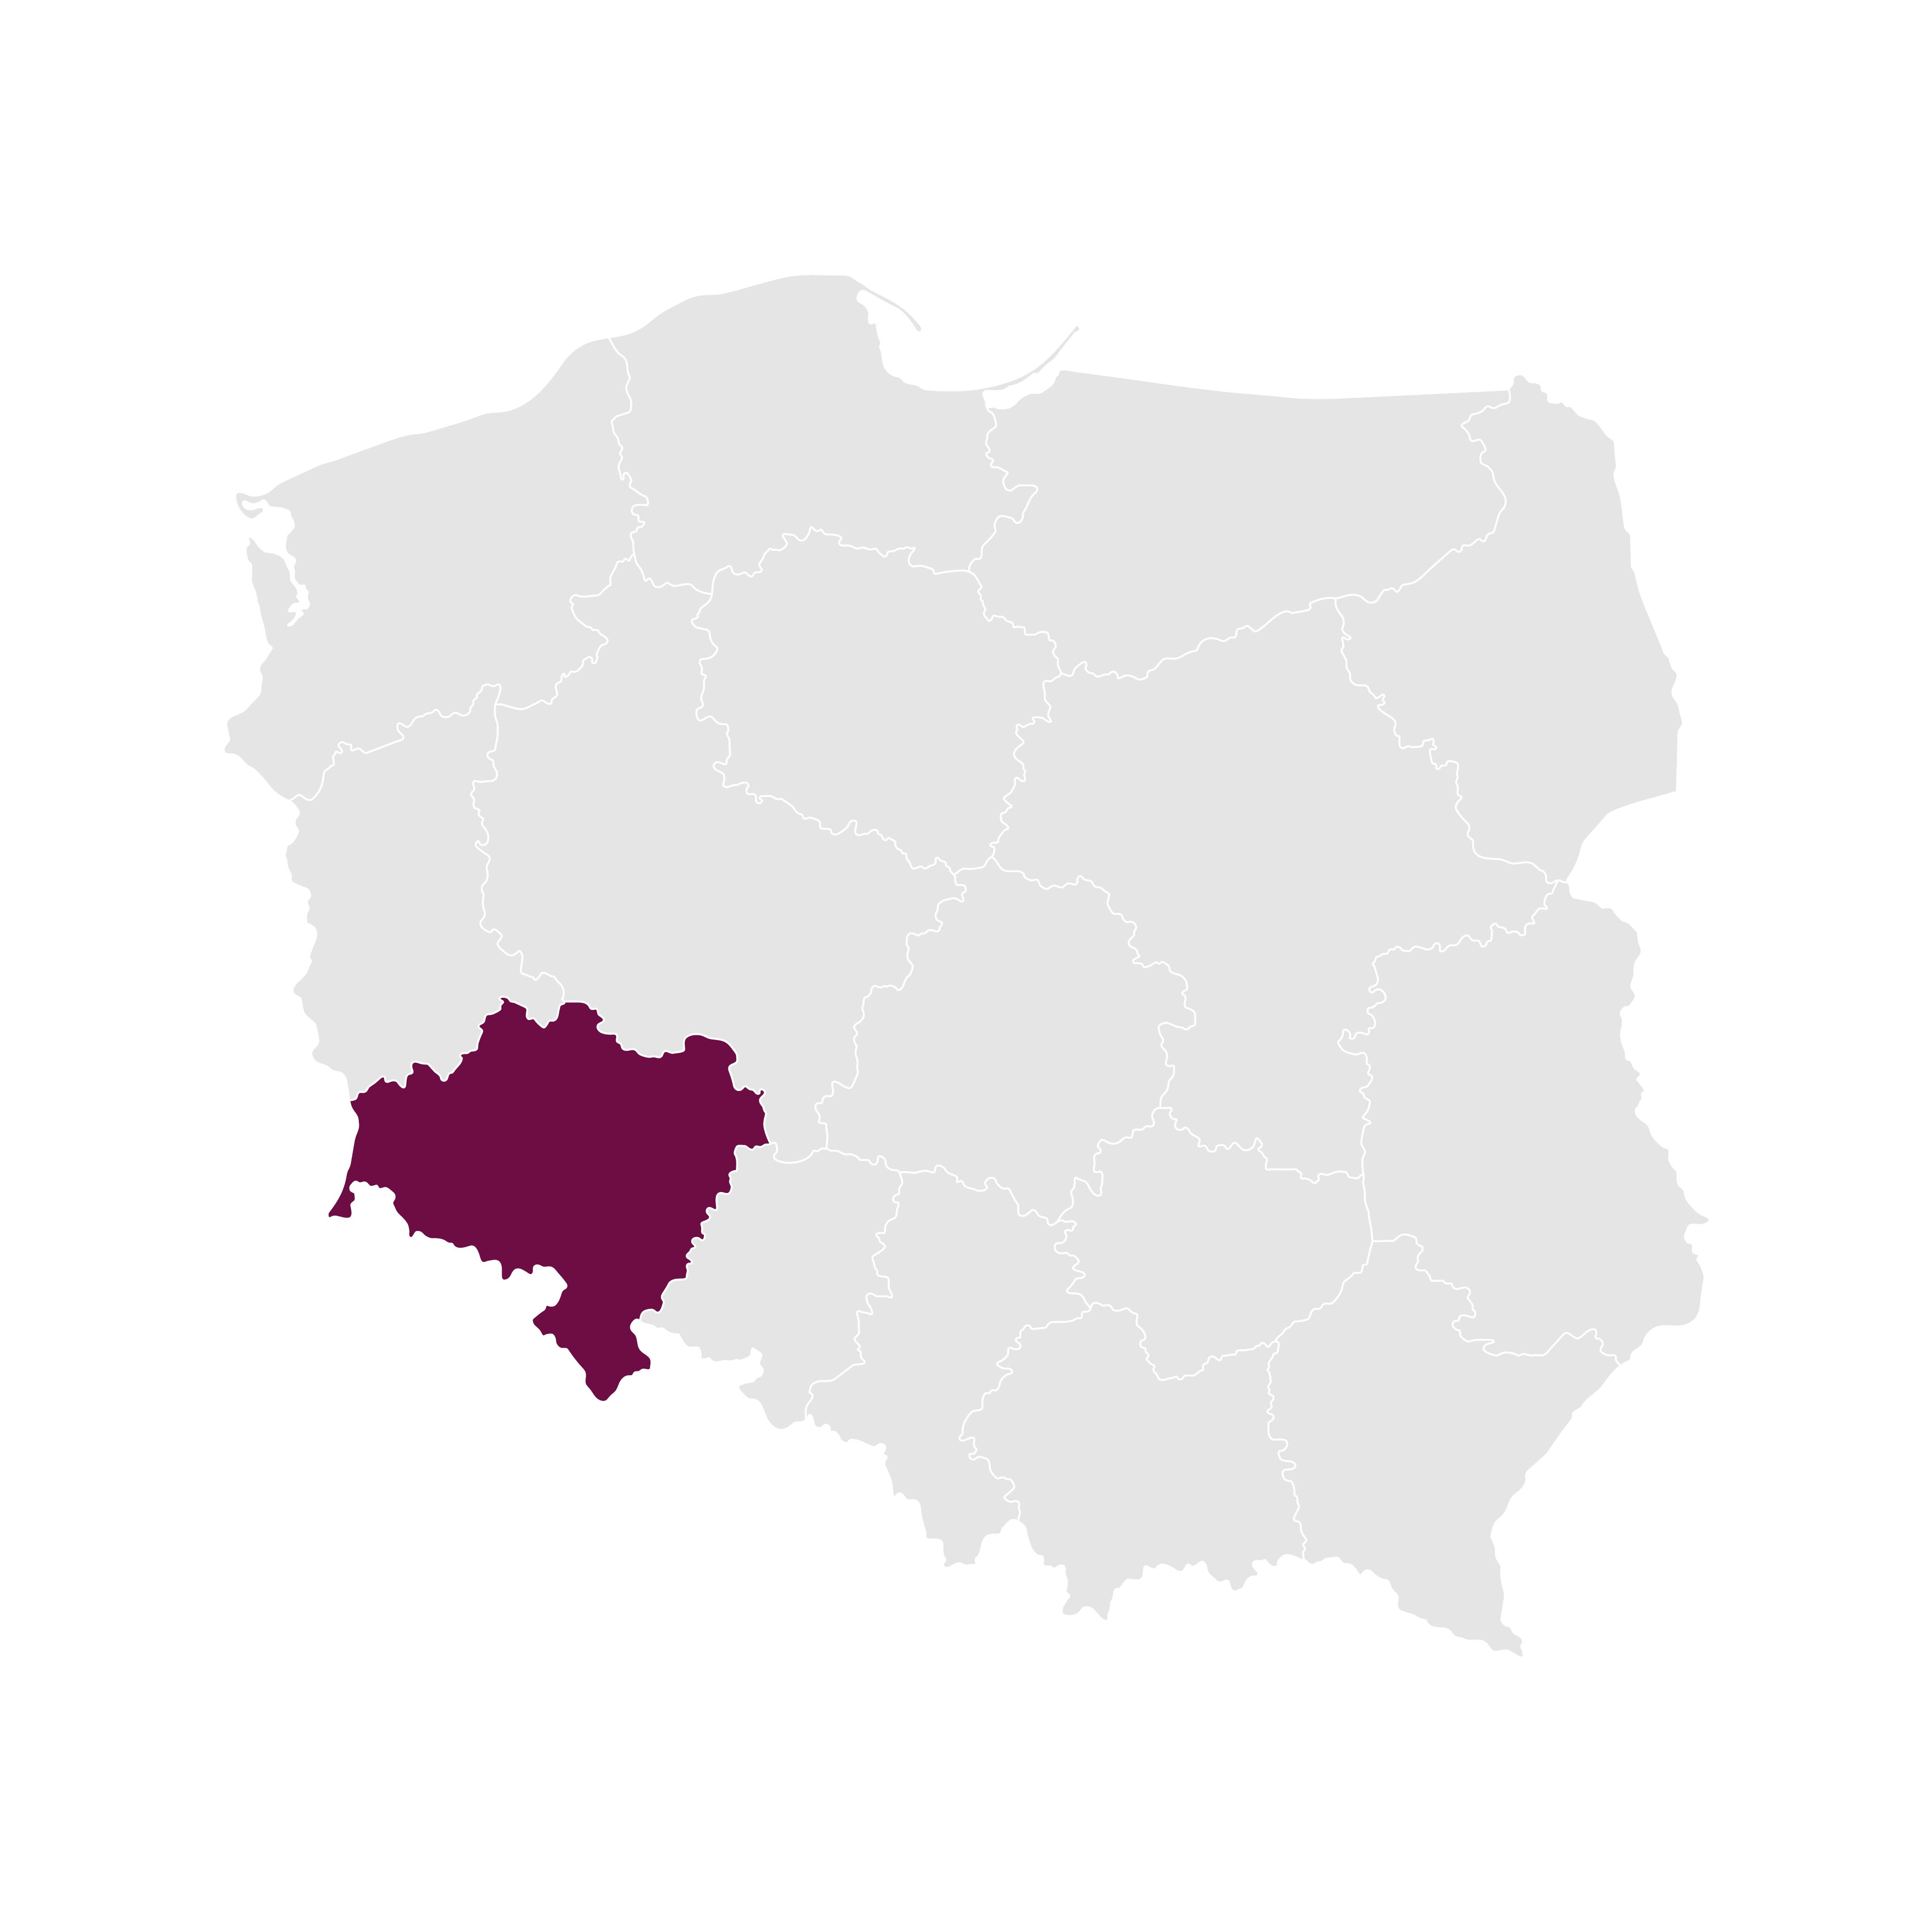 Poland_regions_Dolny Śląsk, Niemcza